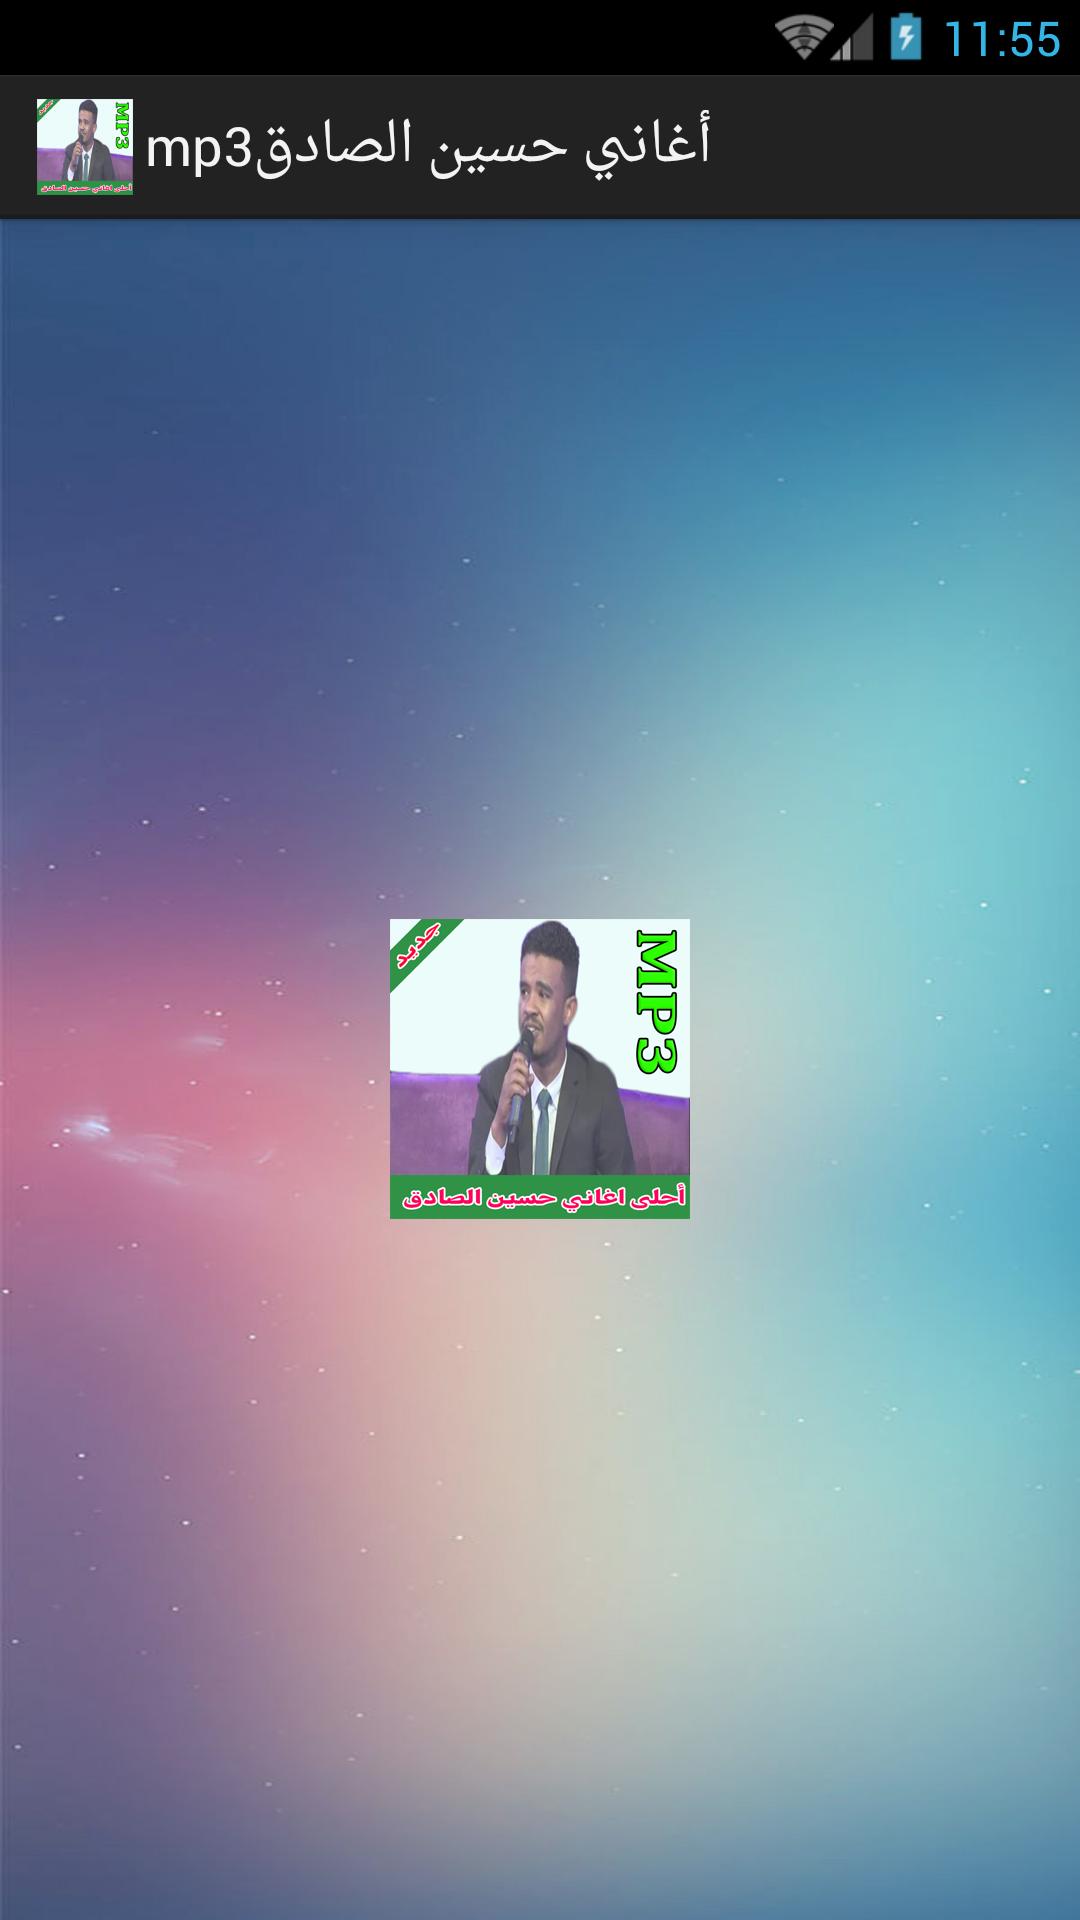 أغاني حسين الصادق mp3 APK für Android herunterladen